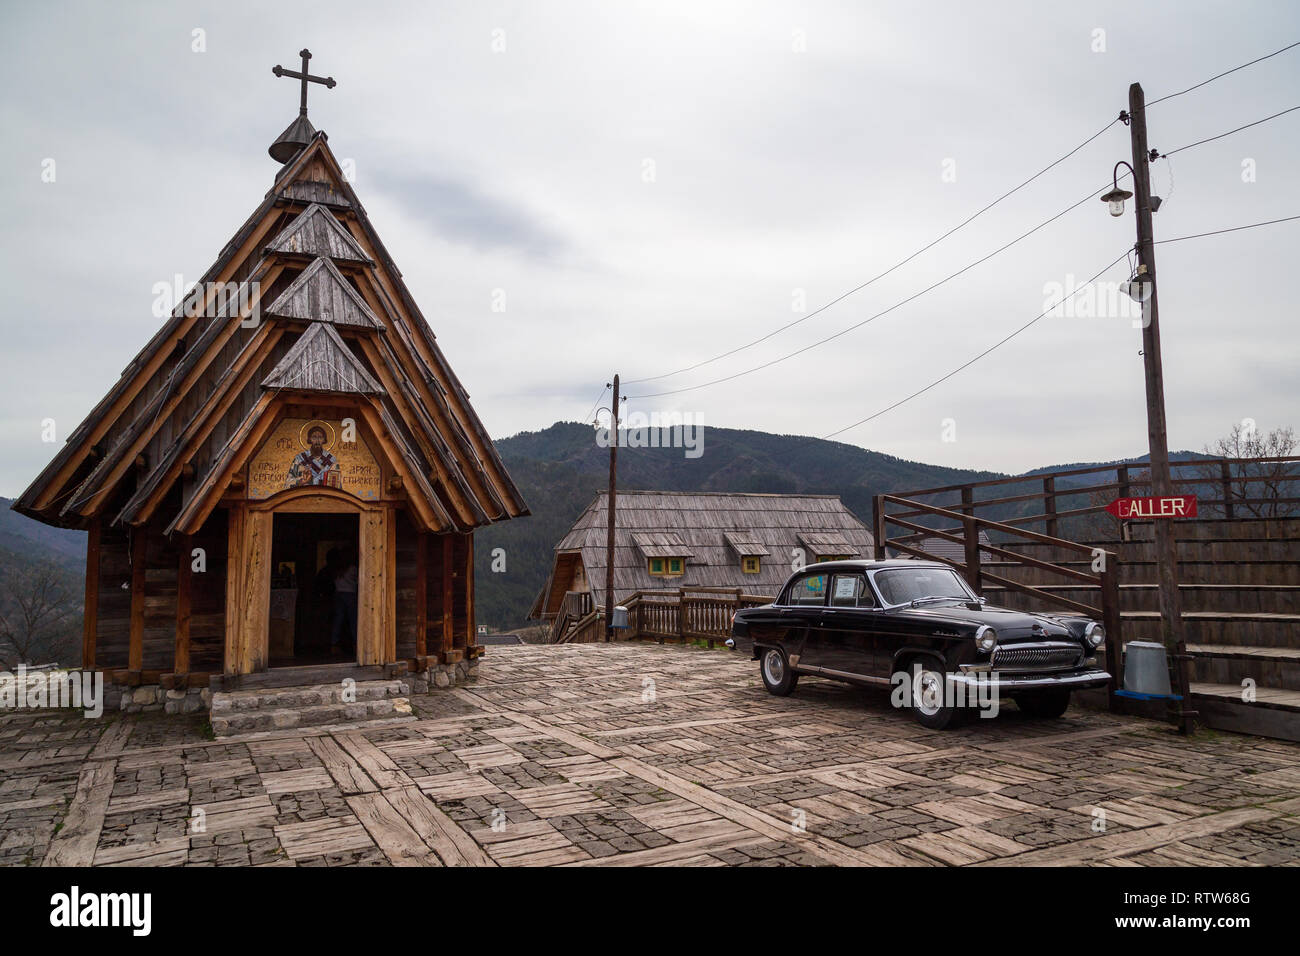 St. Sava Holz- serbisch-orthodoxe Kirche und eine alte Wolga sowjetischen Auto daneben in Drvengrad ethno Dorf gebaut von Emir Kusturica für seinen Film. Serbien Stockfoto